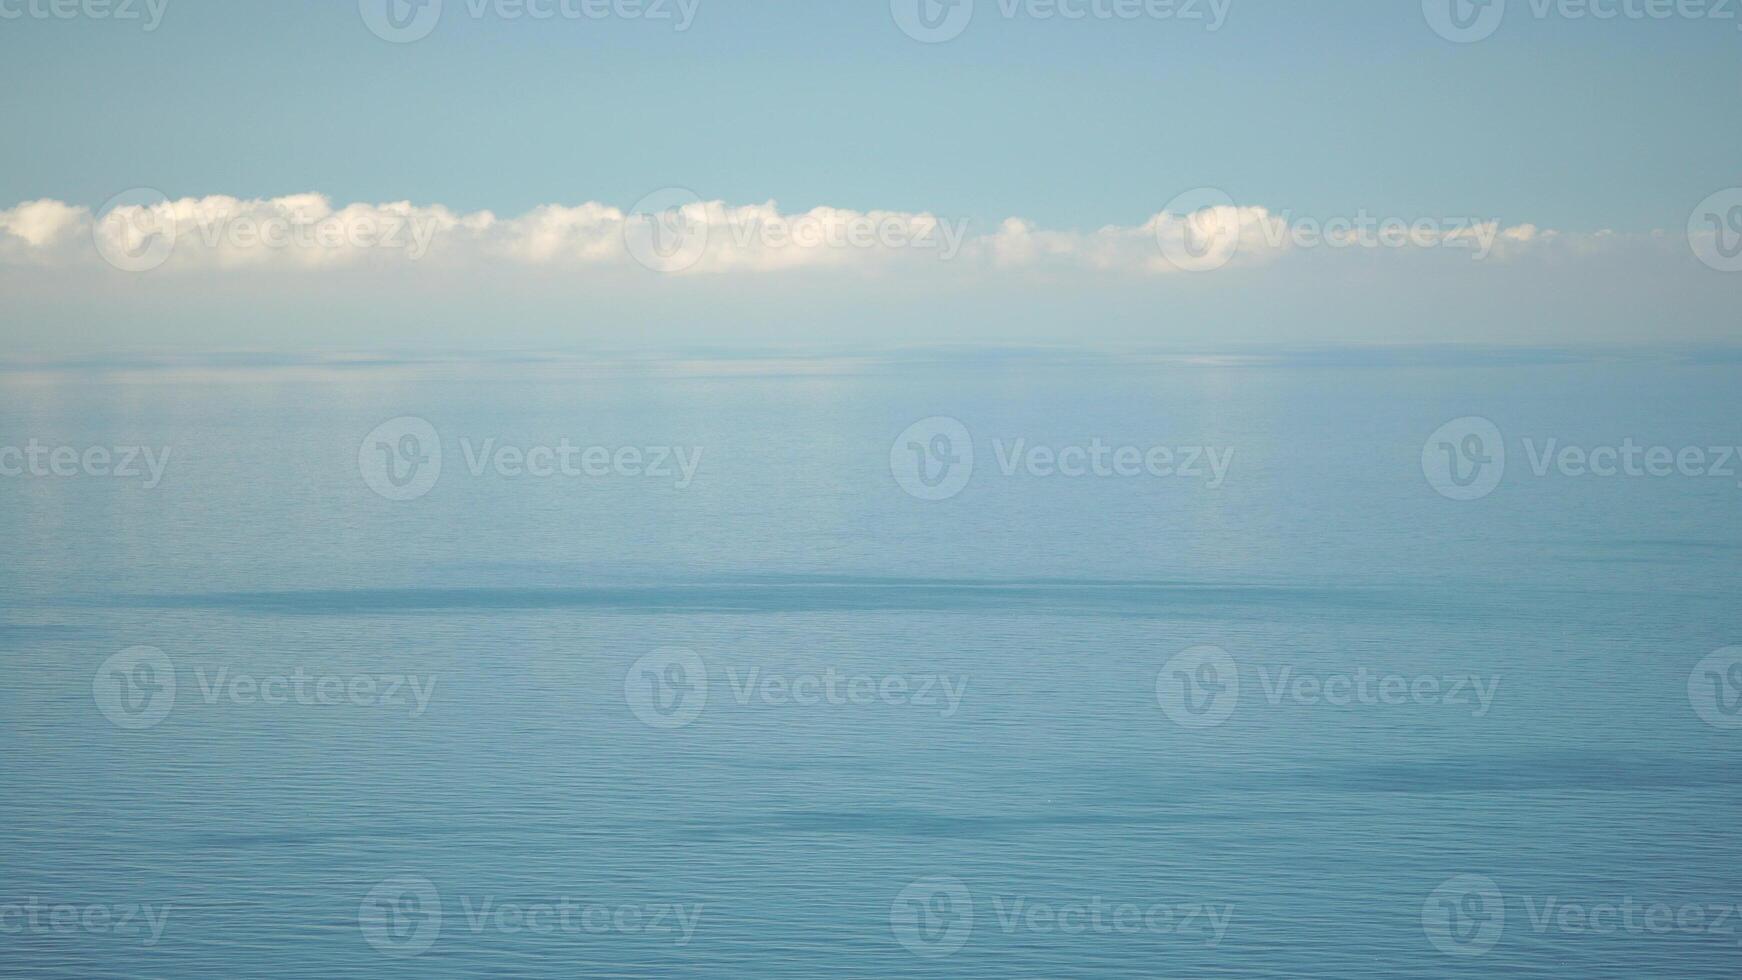 Antenne Panorama- Aussicht von schön Sonnenuntergang über Meer. schön Meereslandschaft. Sonne Blendung, klein Wellen auf das Wasser Oberfläche. Abend. Horizont. niemand. Nein Personen. niemals endend Schönheit von Natur. foto